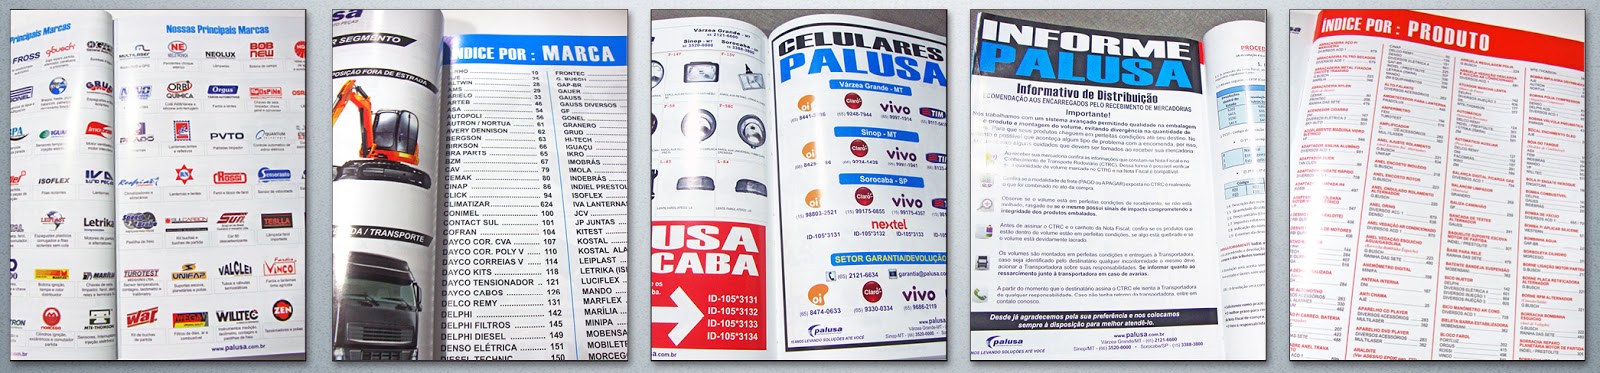 Luiz Arruda: Catálogo Palusa 2014 - Catálogo de autopeças com 14 mil itens  em 730 páginas